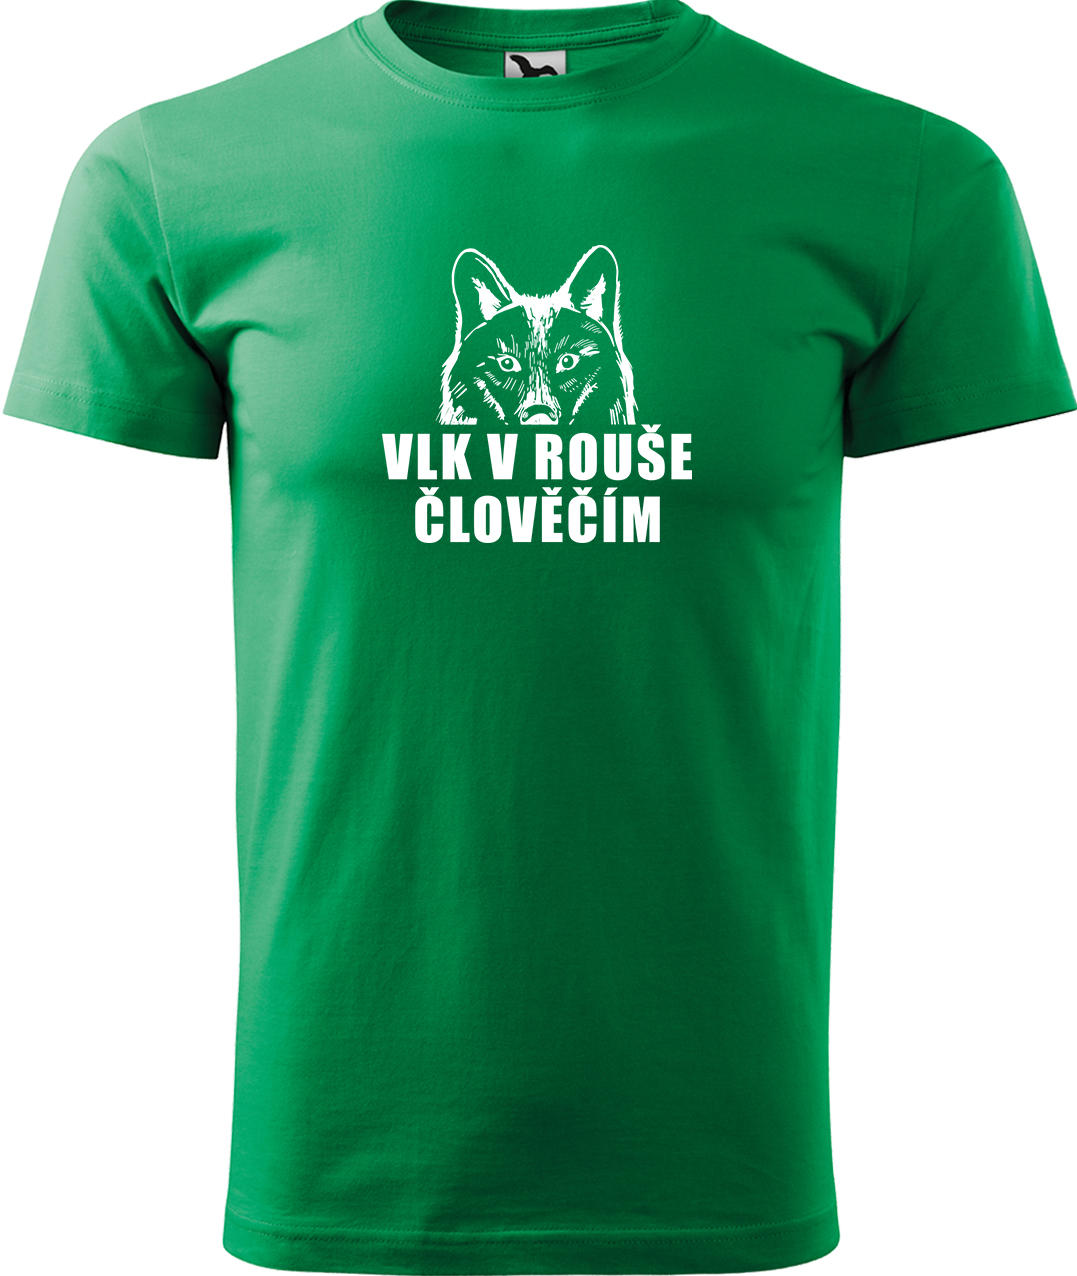 Pánské tričko s vlkem - Vlk v rouše člověčím Velikost: L, Barva: Středně zelená (16)